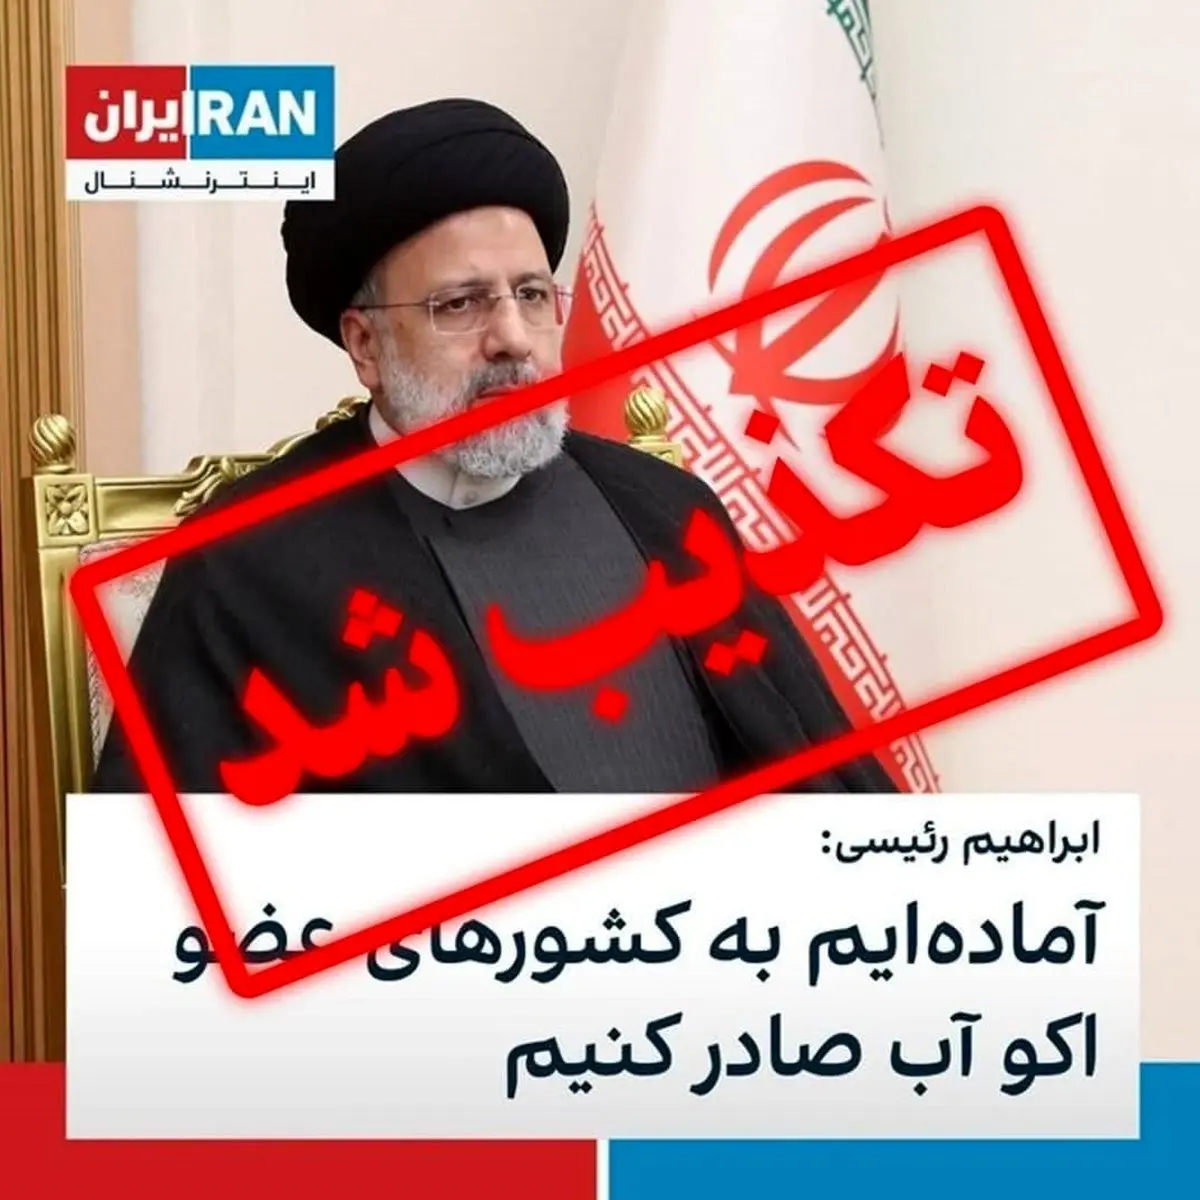 باور دروغ های بزرگ، ساده تر؛ ایران اینترنشنال همچنان بر خط دروغ